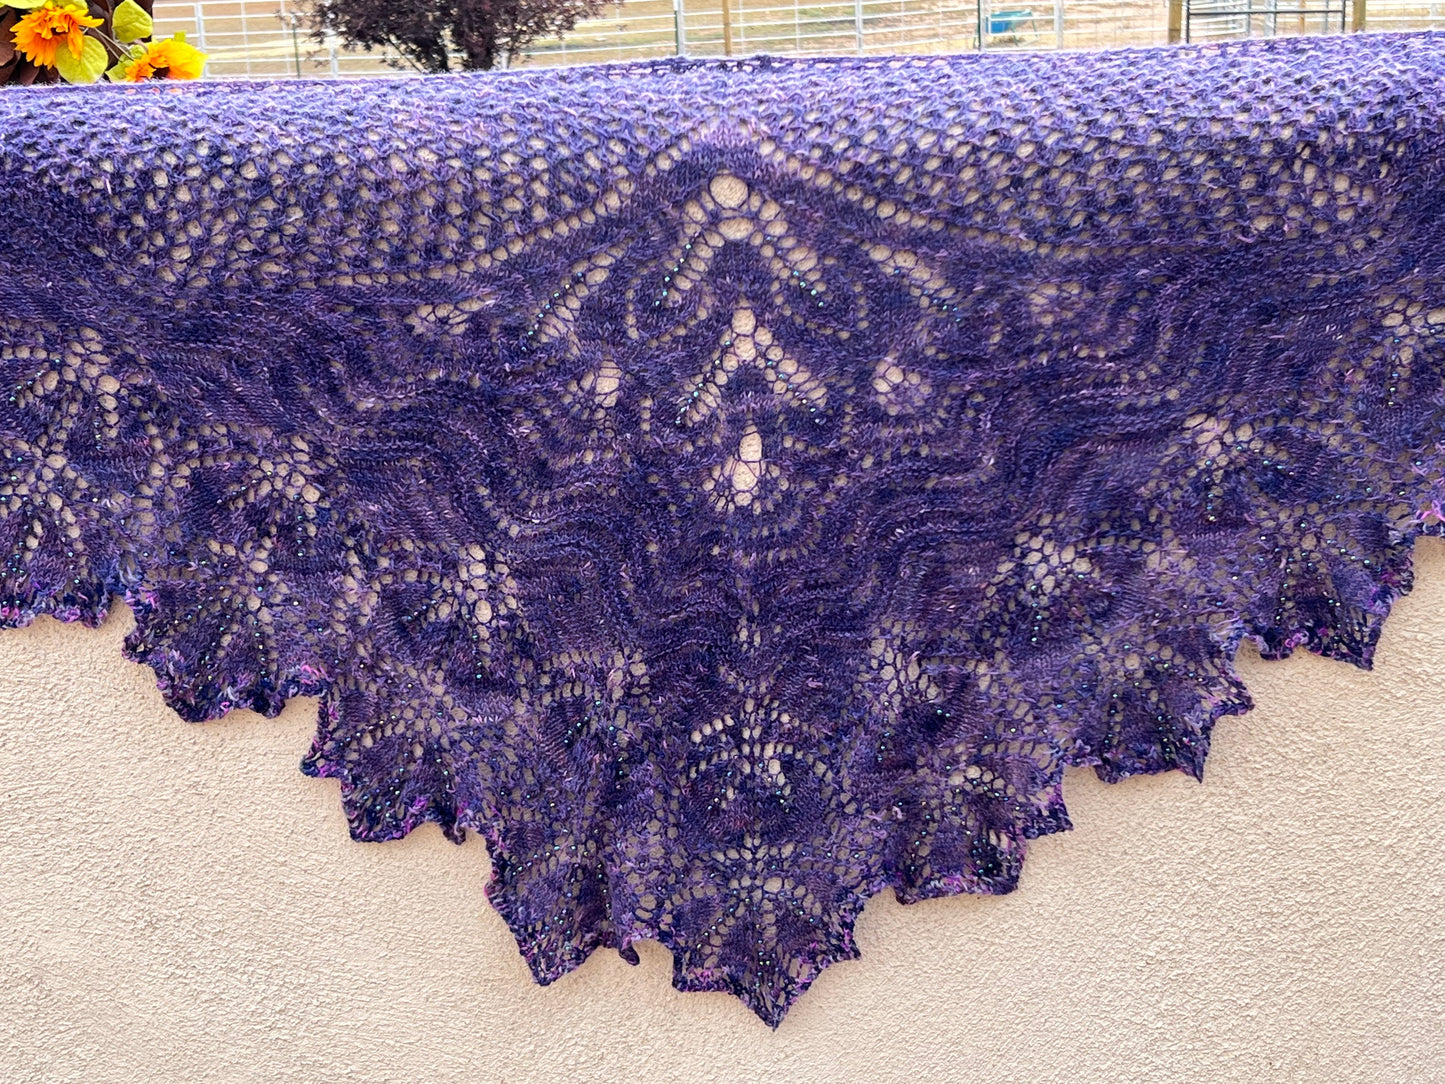 Shawl-Lace Knit Shawl-Purple